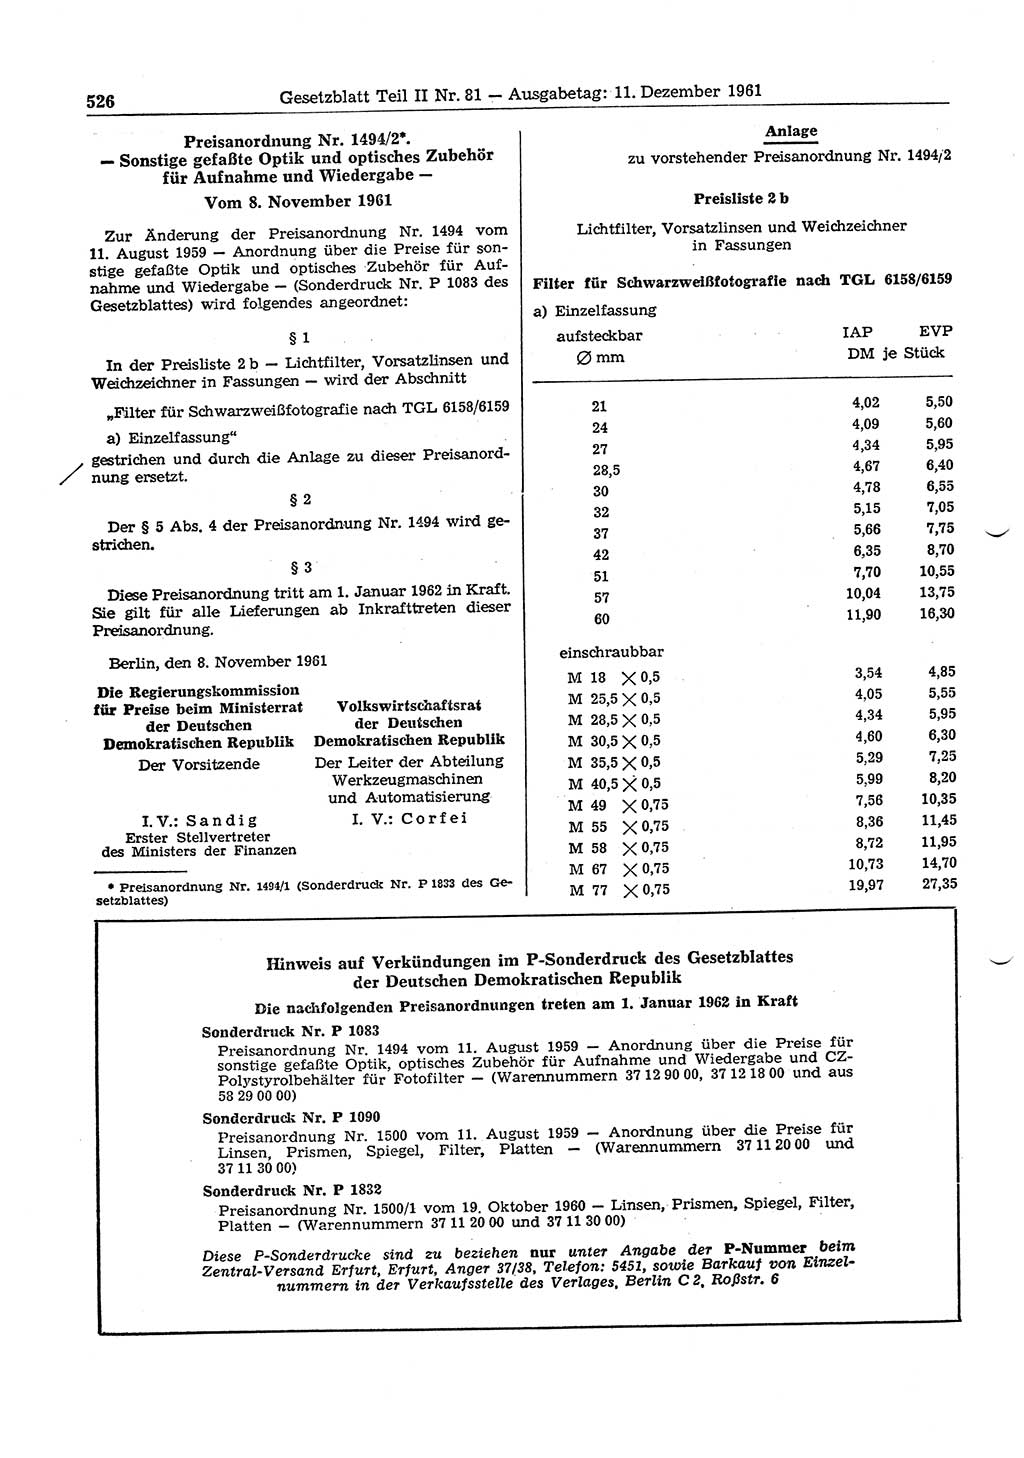 Gesetzblatt (GBl.) der Deutschen Demokratischen Republik (DDR) Teil ⅠⅠ 1961, Seite 526 (GBl. DDR ⅠⅠ 1961, S. 526)